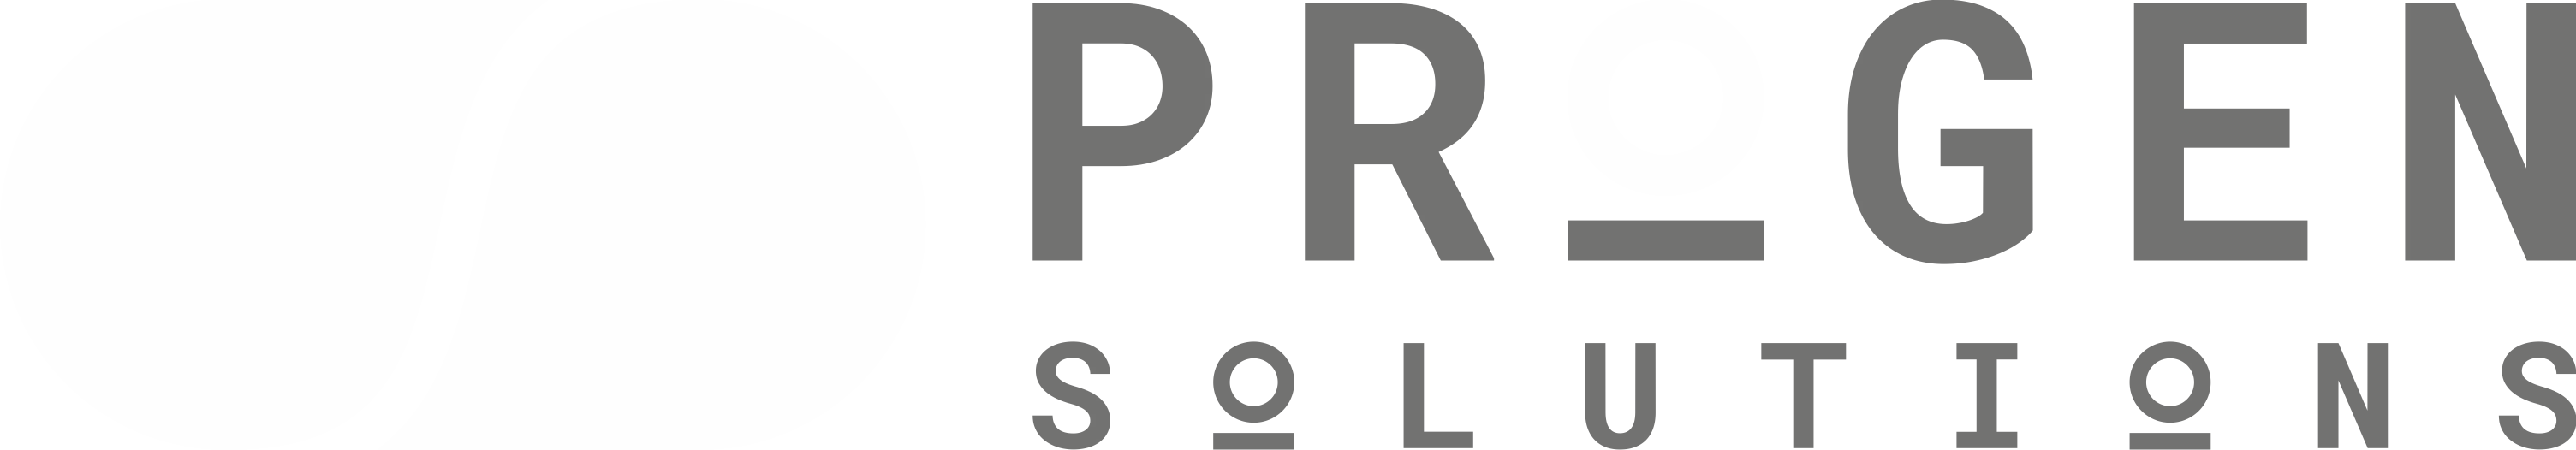 Progen logo